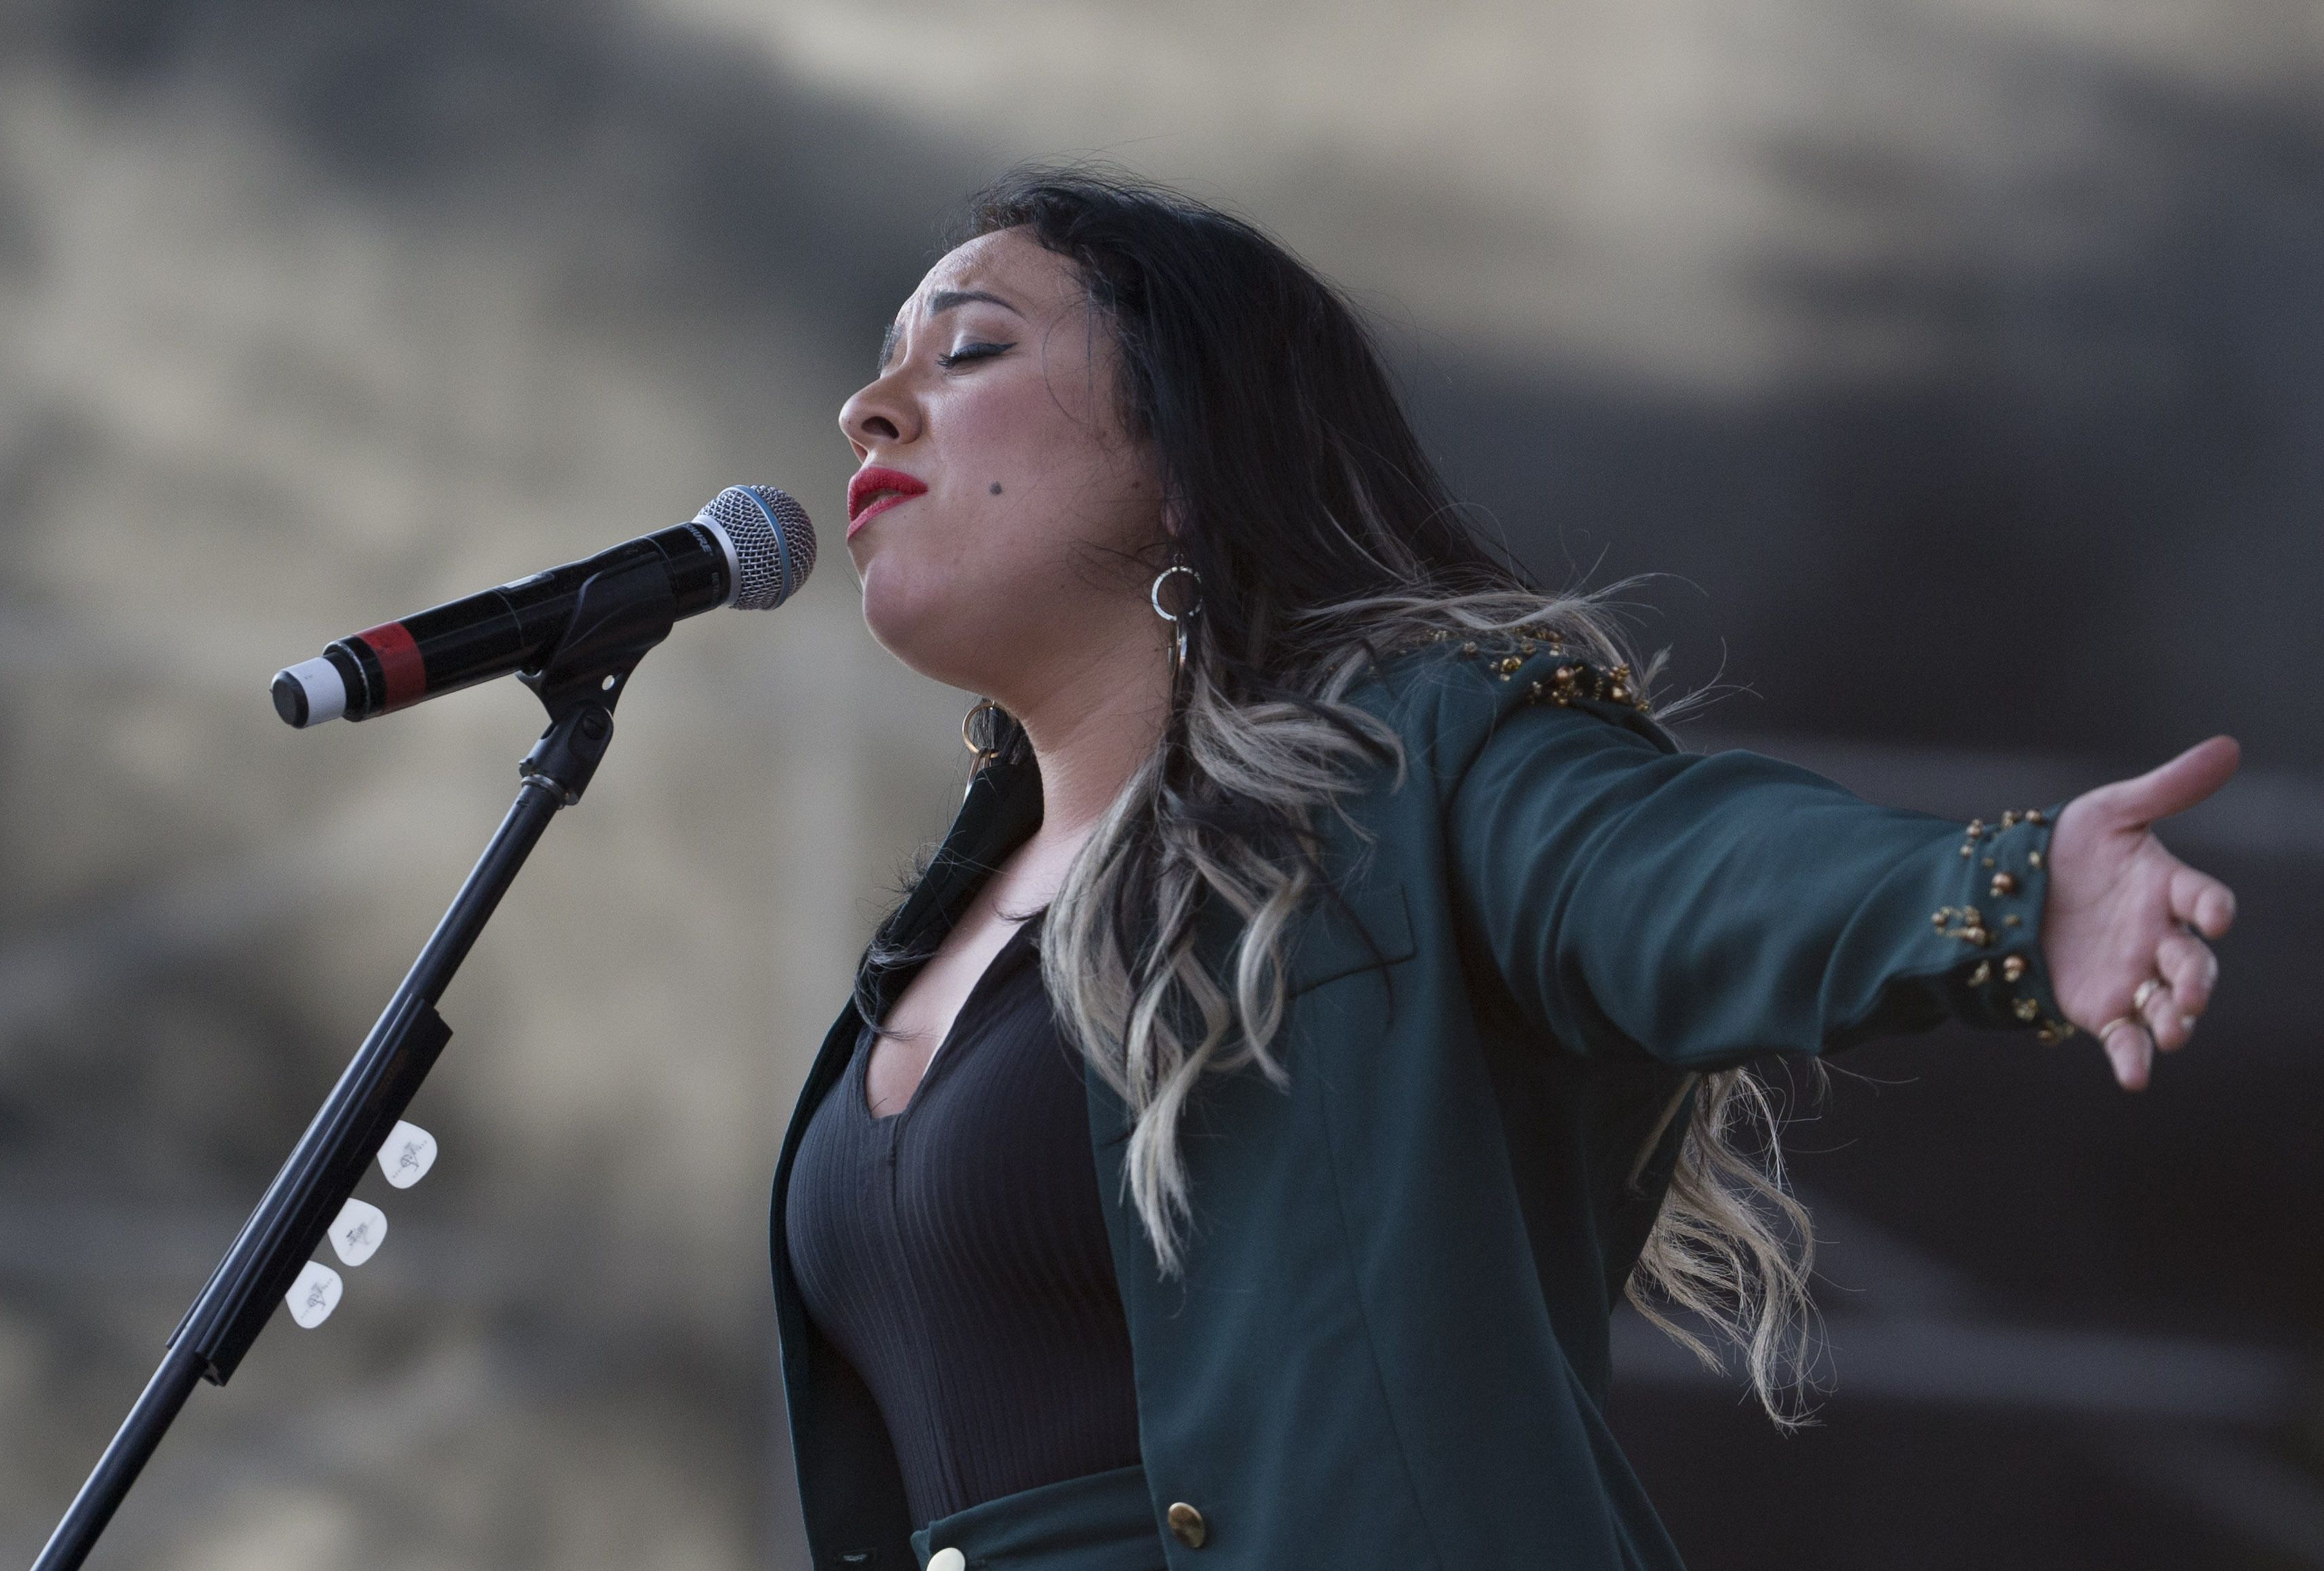 La cantautora presentará su nuevo material discográfico en la Ciudad de México. (Foto AP/Eduardo Verdugo, archivo)